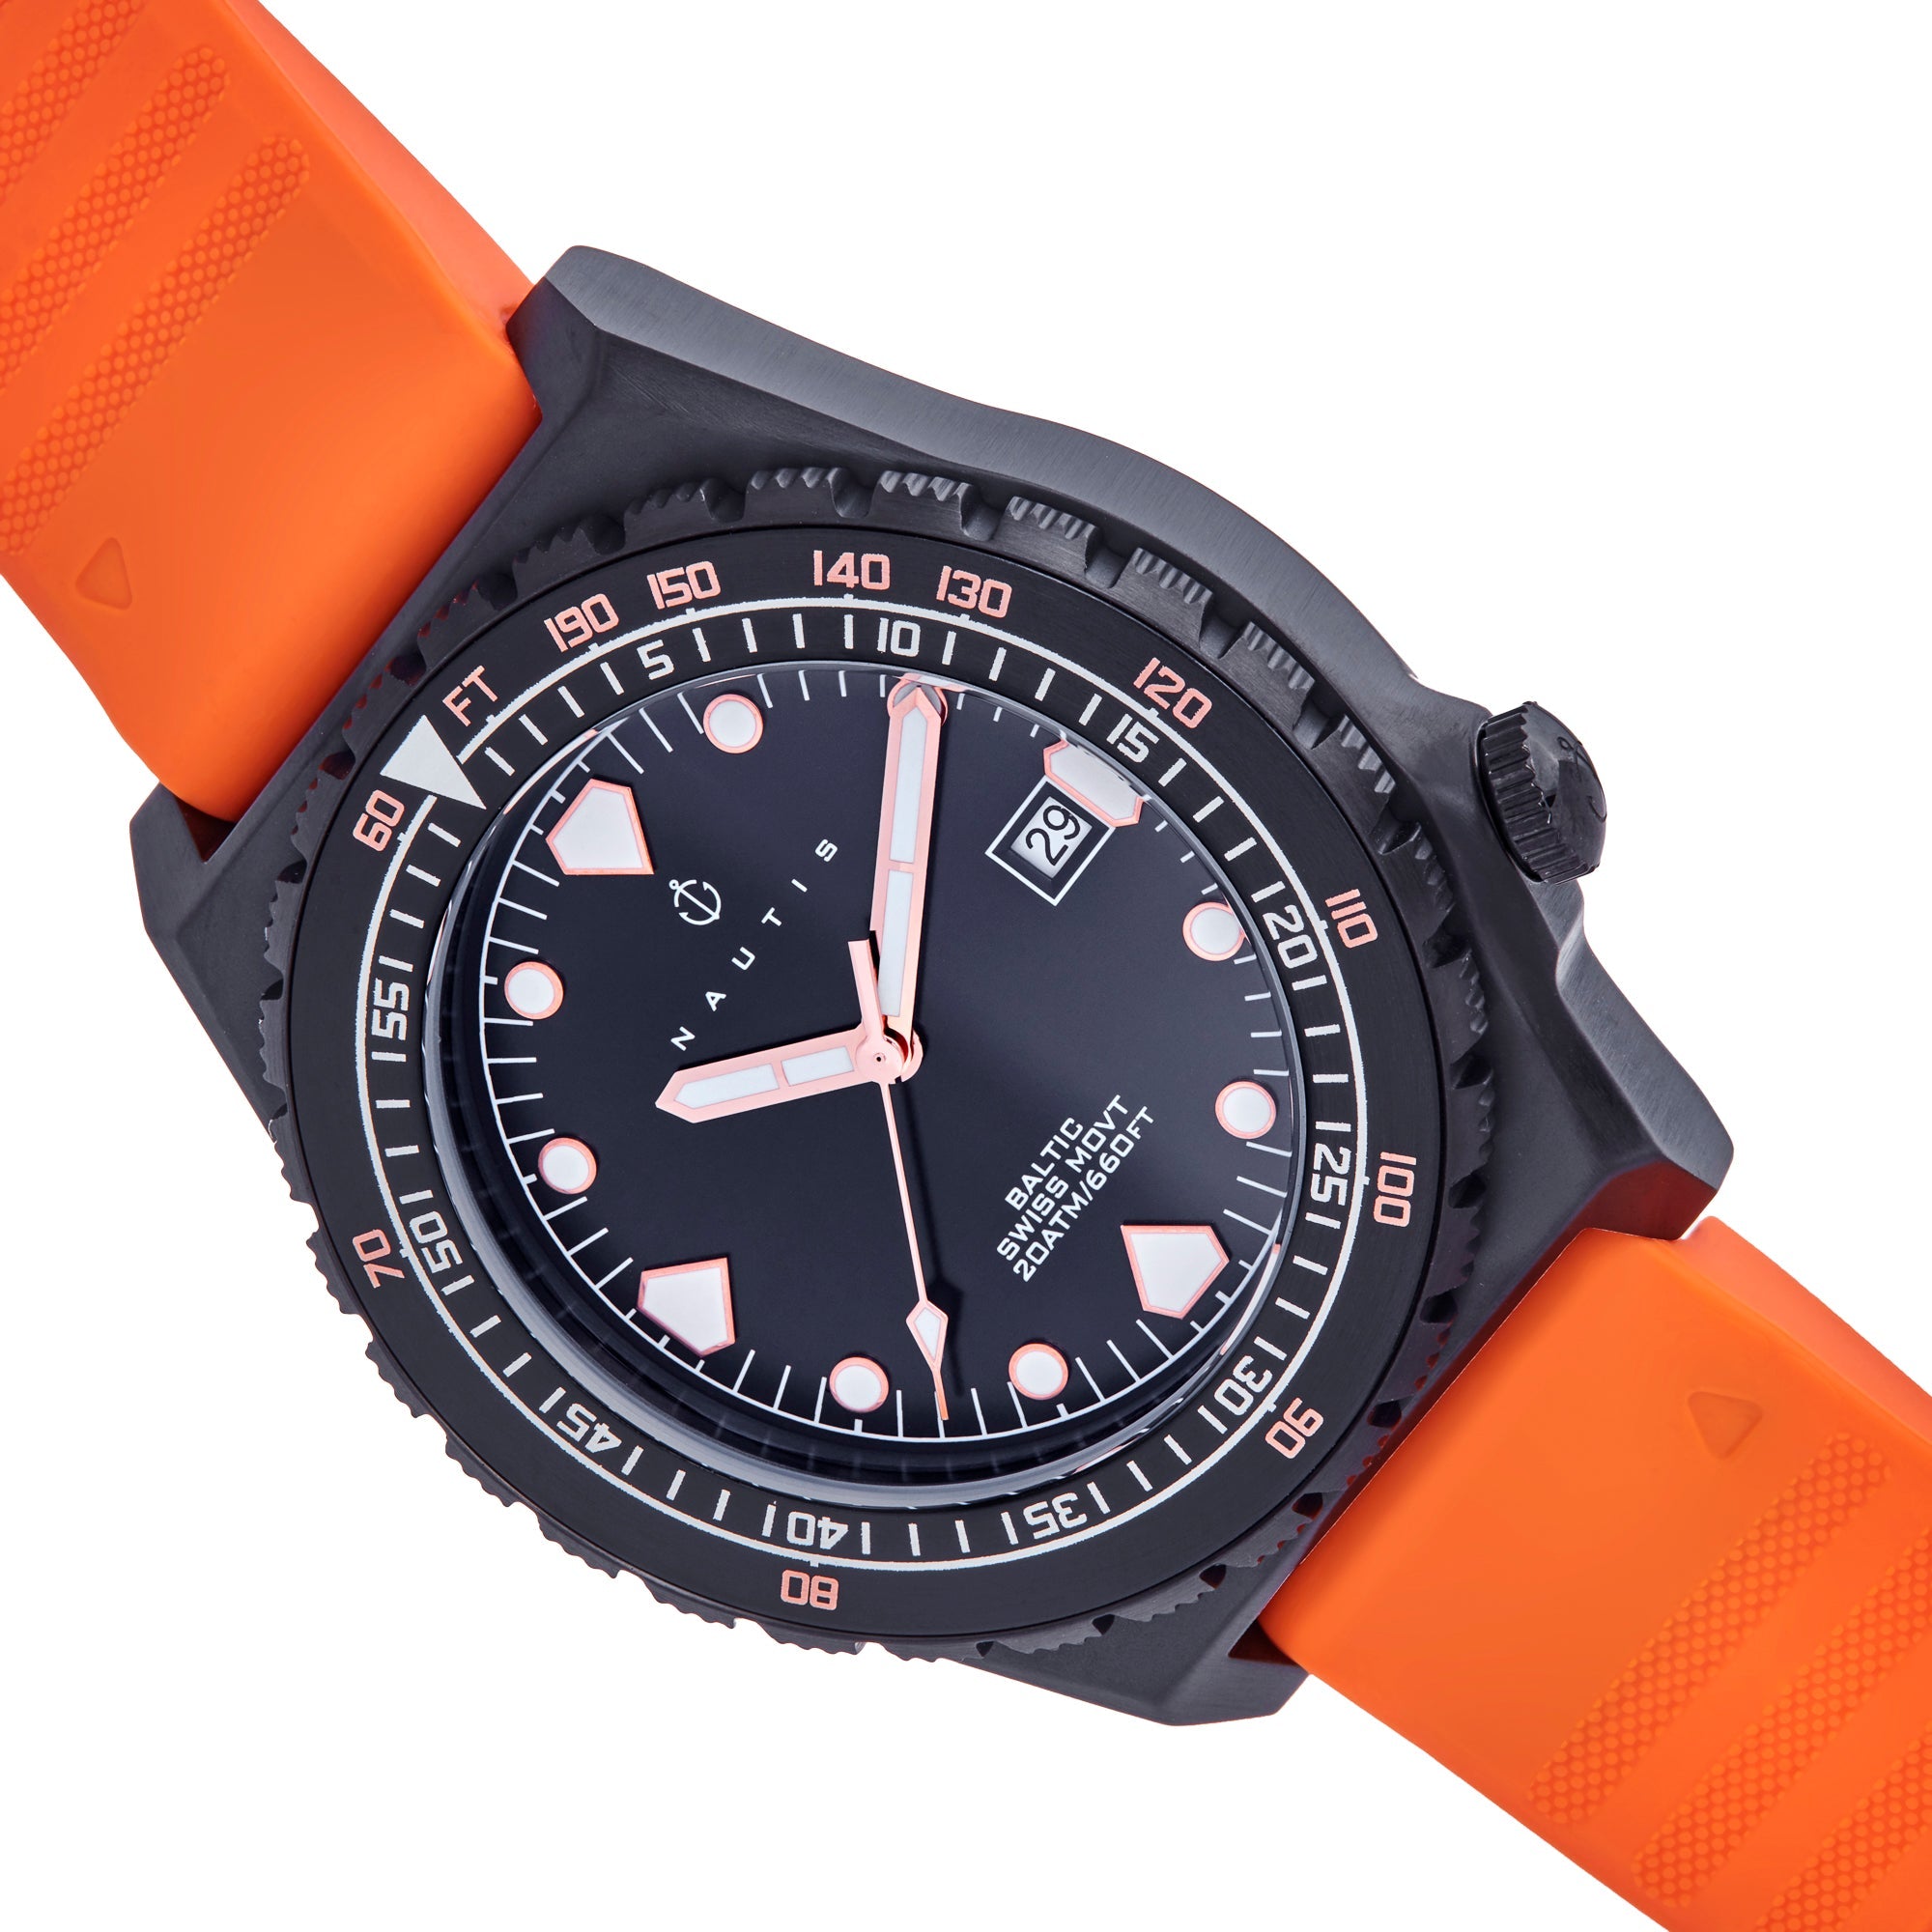 Nautis Baltic Strap Watch w/Date - Black/Orange - NAUN104-6